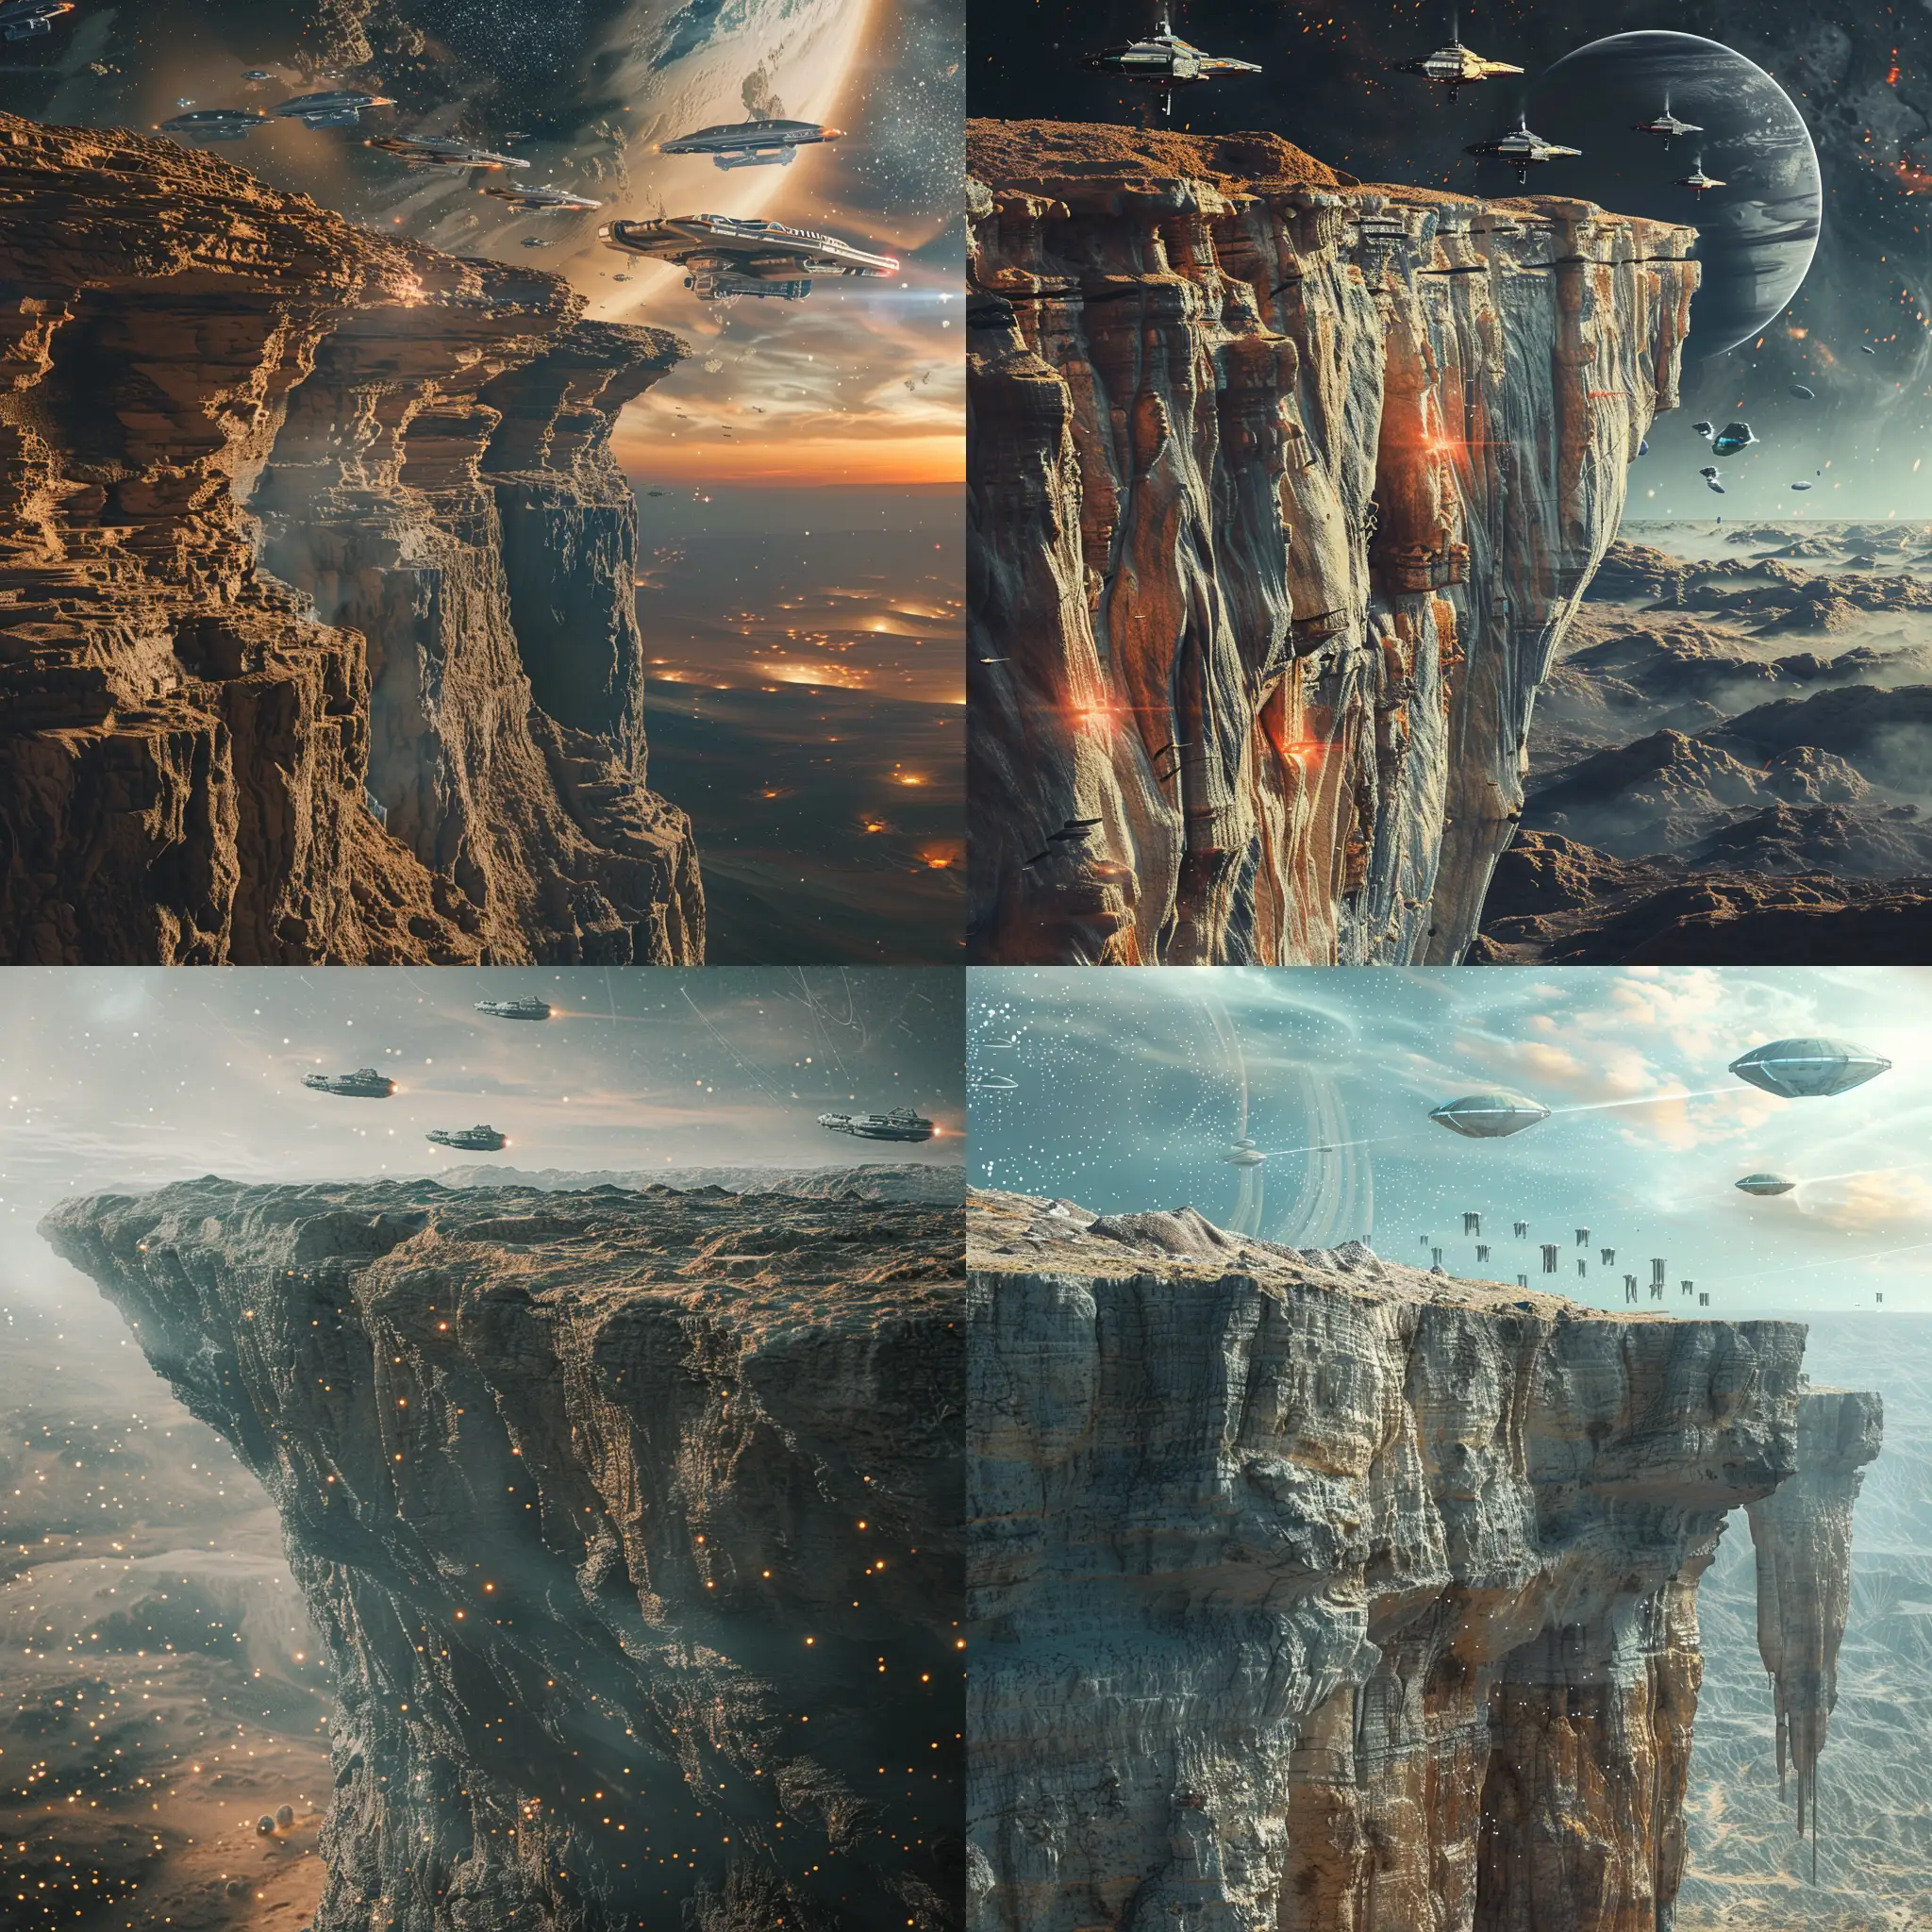  Фантастическая планета в стилистике фильма Дюна, космический пейзаж, обрыв, на небе космические корабли, 8k, плёночная фотография, ультодетализация, рассеяние света, резкий фокус, высокая детализация 